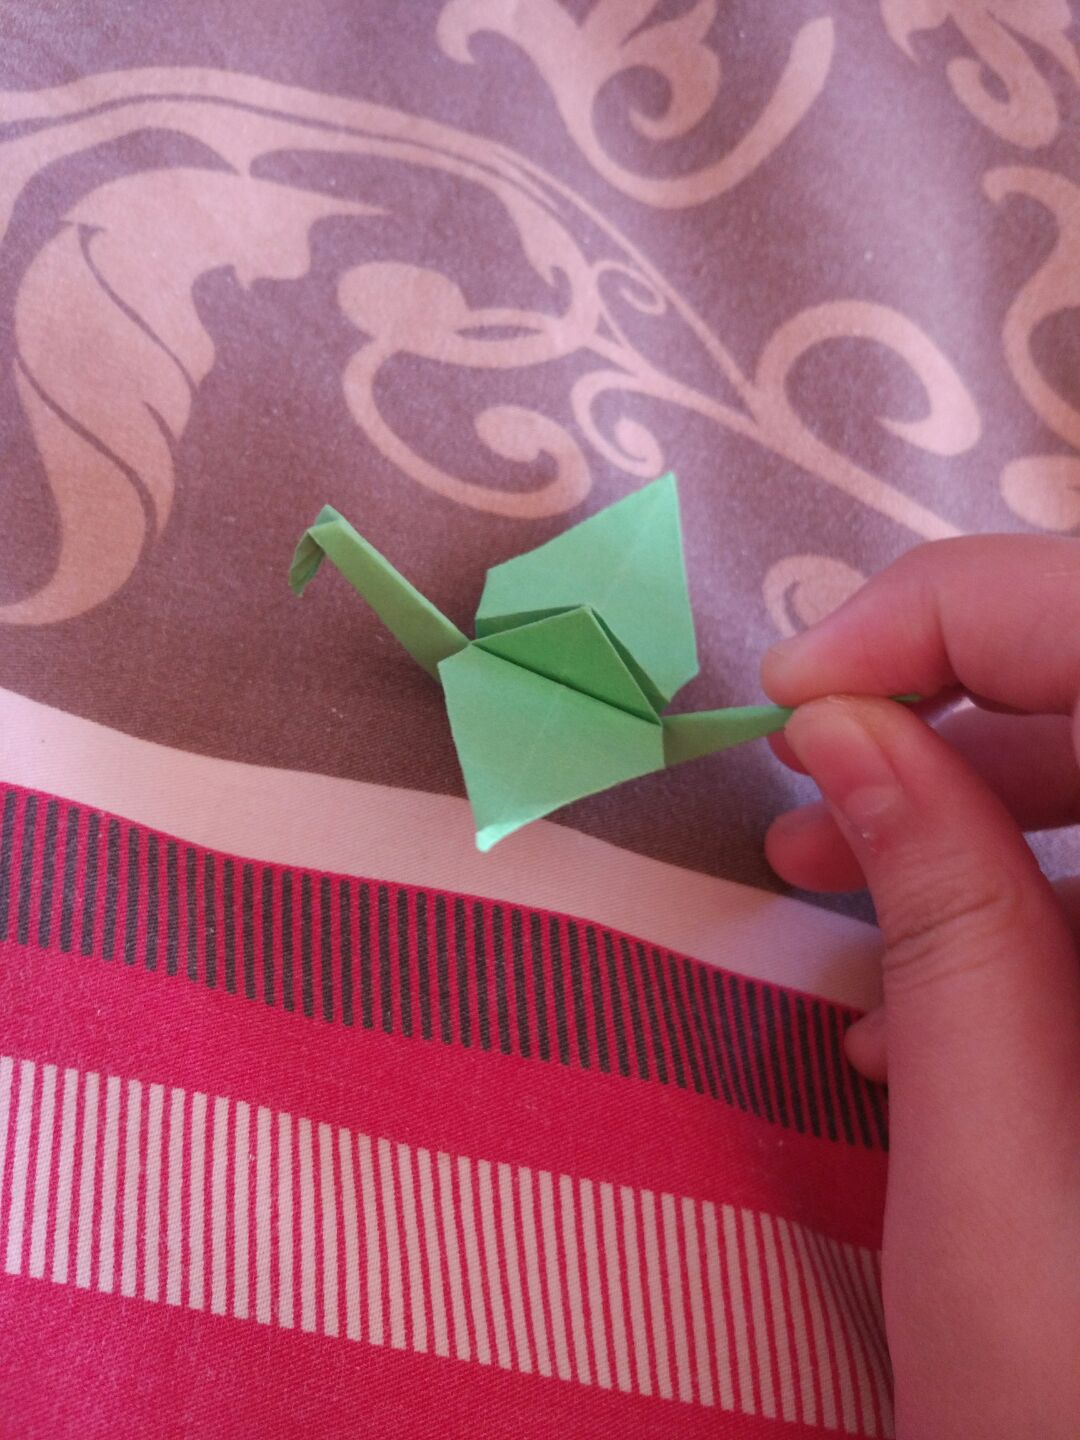 这种千纸鹤比较简单 有兴趣的朋友可以叠叠试试。